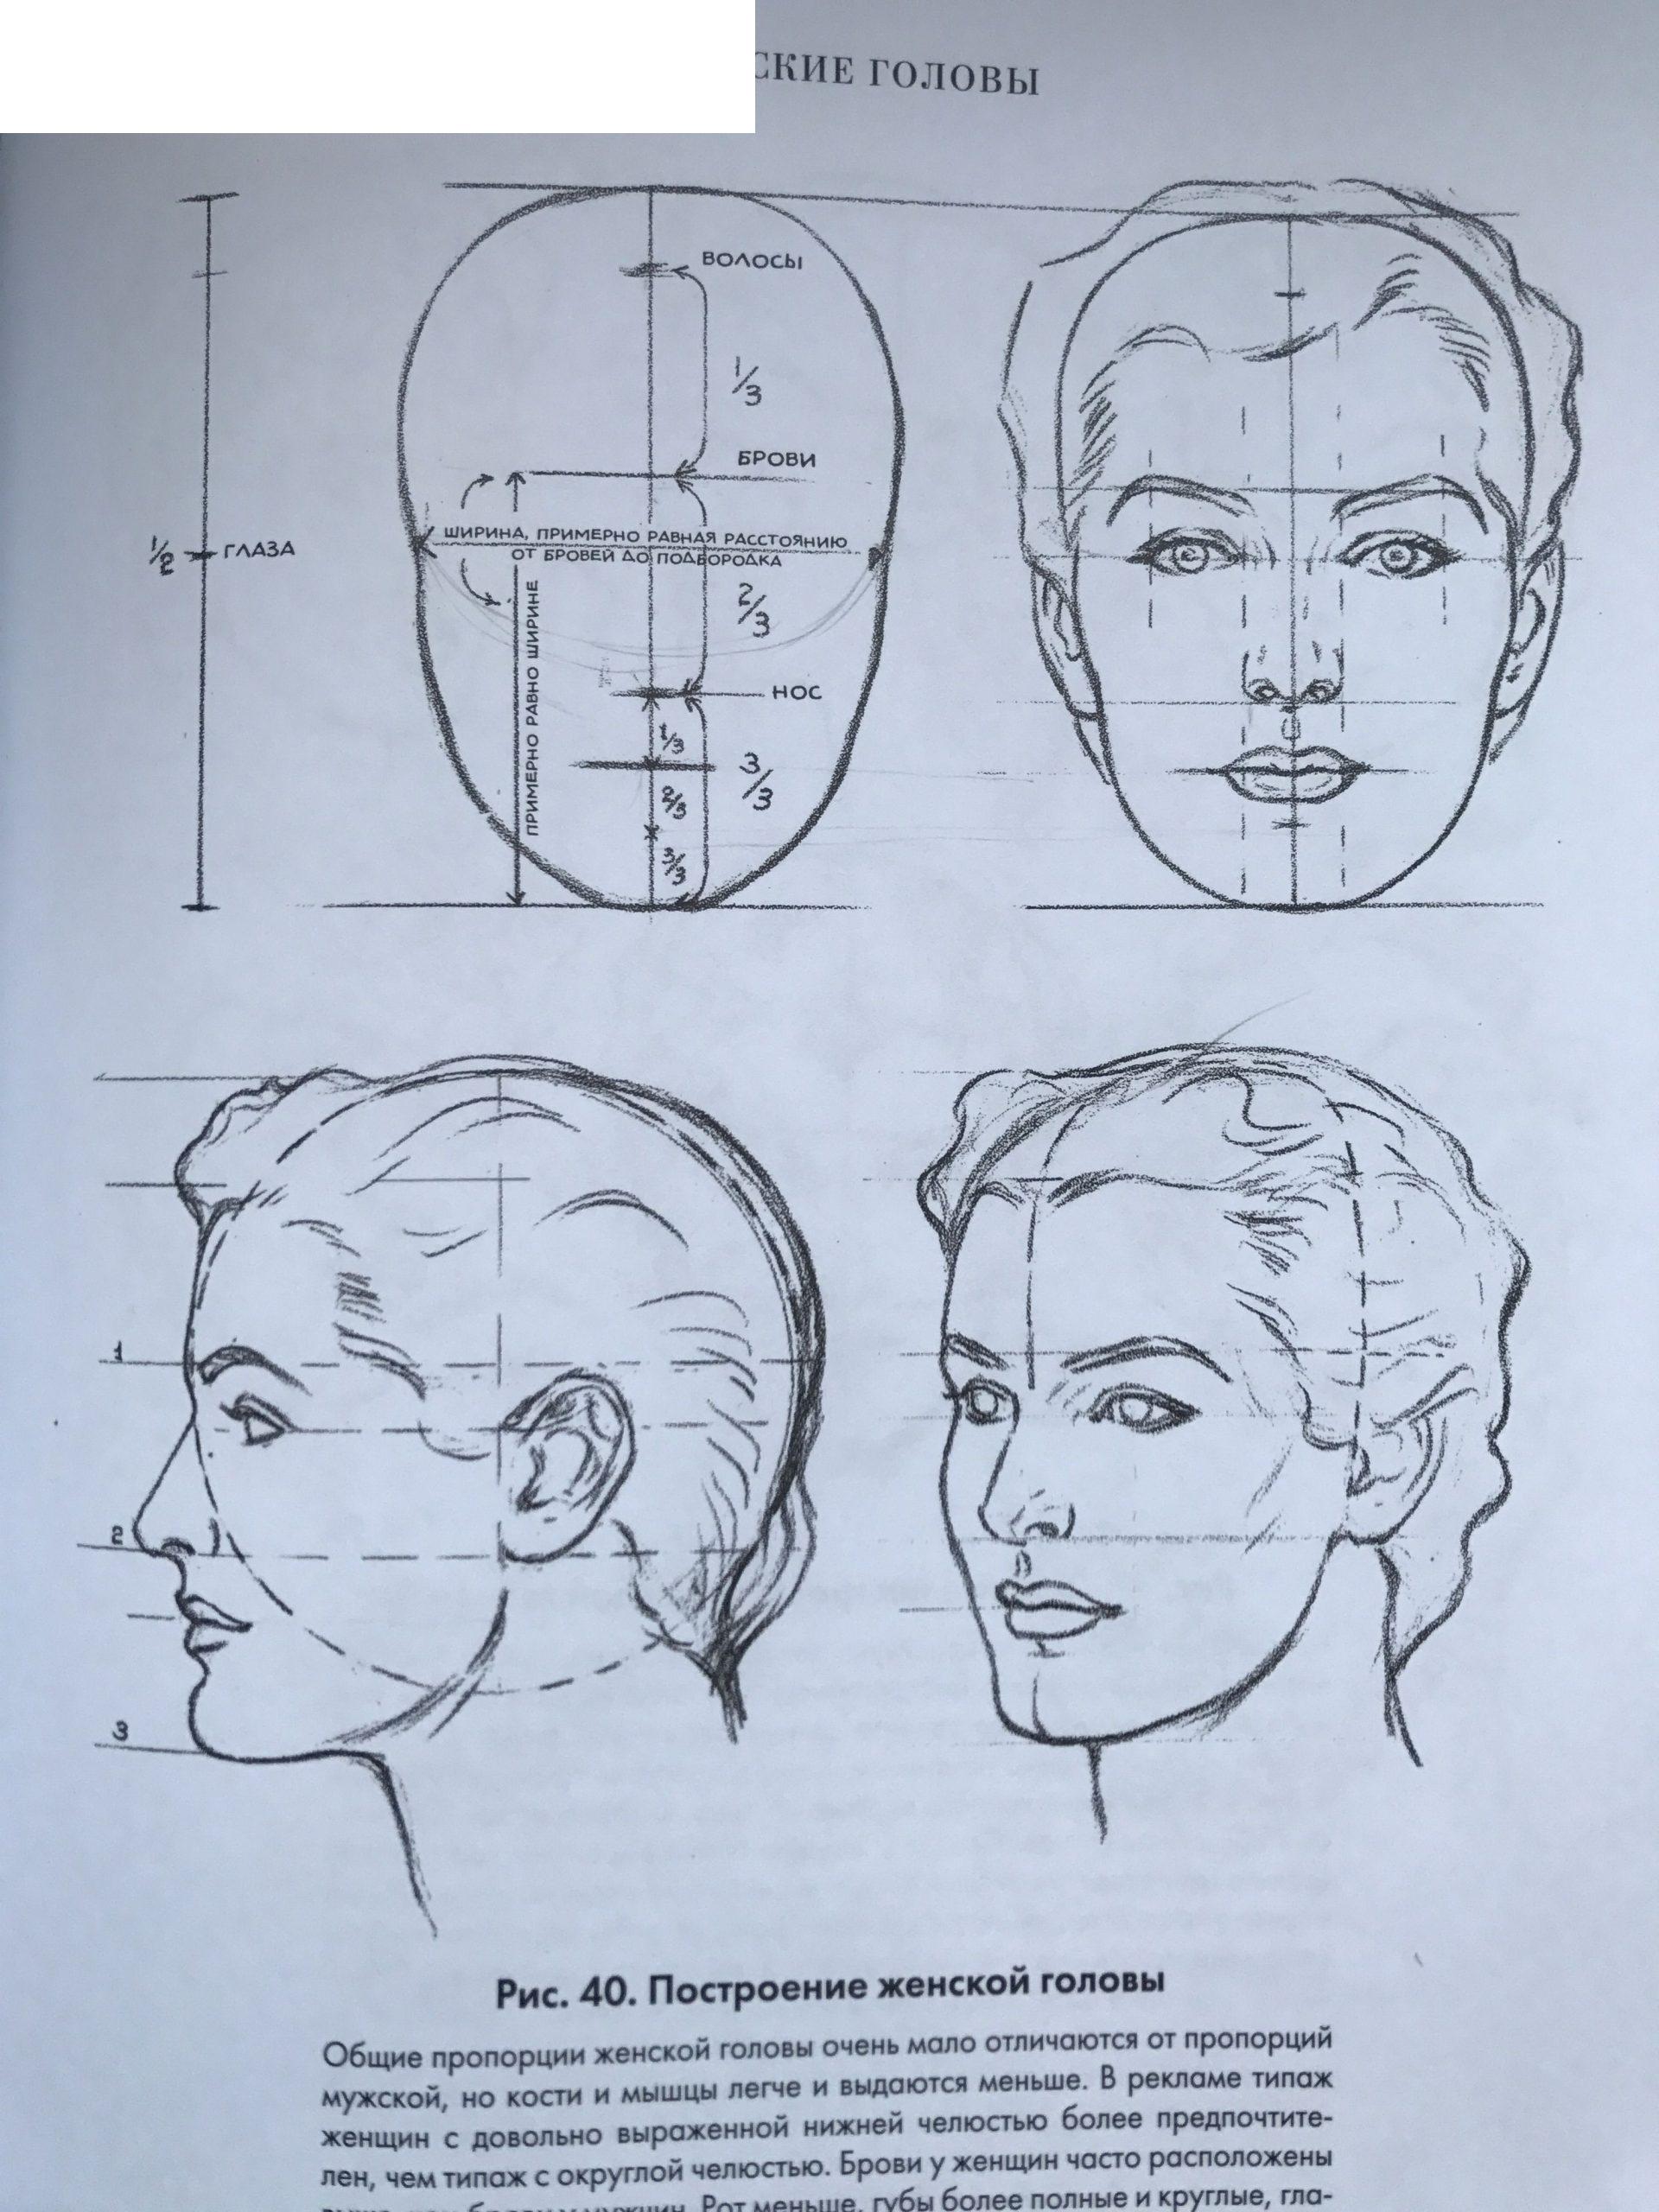 اینڈریو لومس کے مطابق سر کے پورے چہرے (سامنے) کی تعمیر